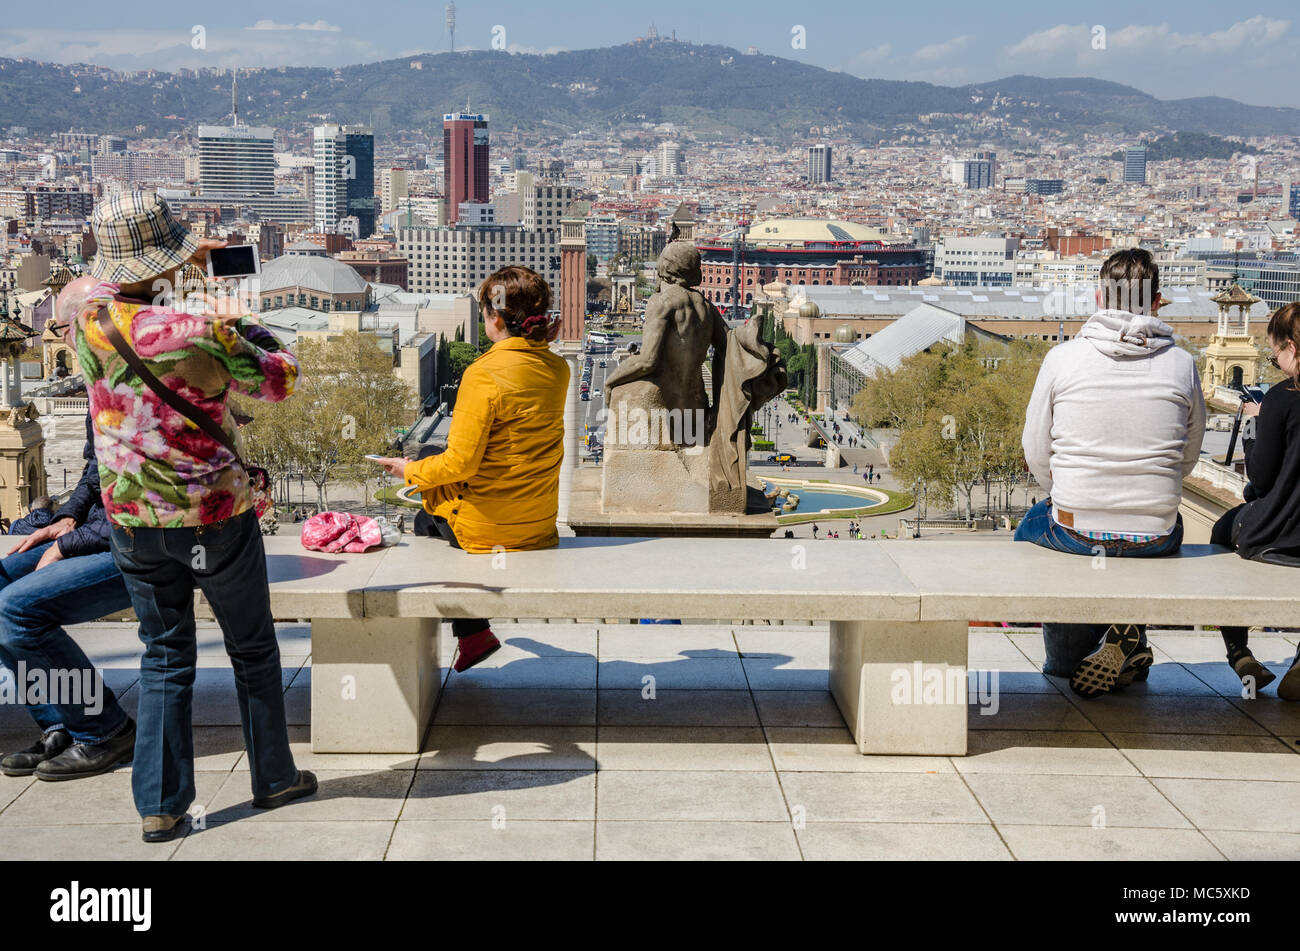 Ein Blick von außen das nationale Kunstmuseum von Katalonien über die Stadt Barcelona. Touristen sitzen auf einer Bank, um die Aussicht zu genießen. Stockfoto